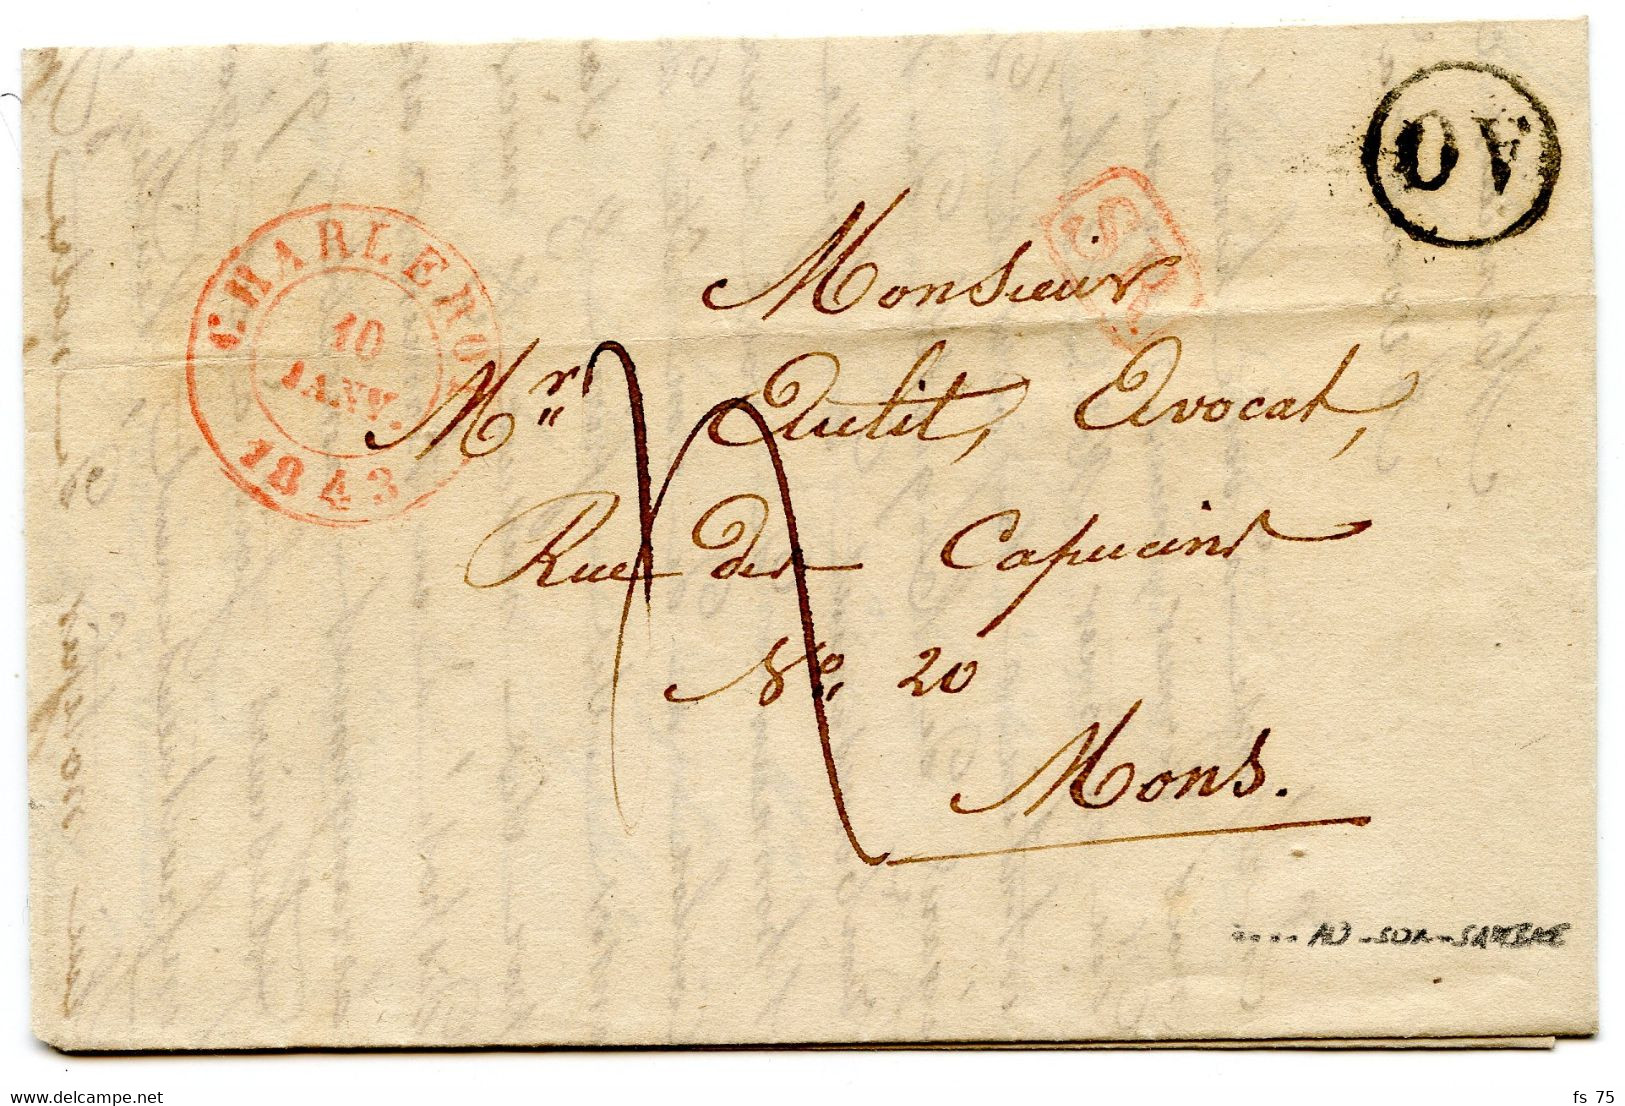 BELGIQUE - TAD CHARLEROY +  SR + BOITE RURALE AO SUR LETTRE AVEC TEXTE, 1843 - 1830-1849 (Unabhängiges Belgien)